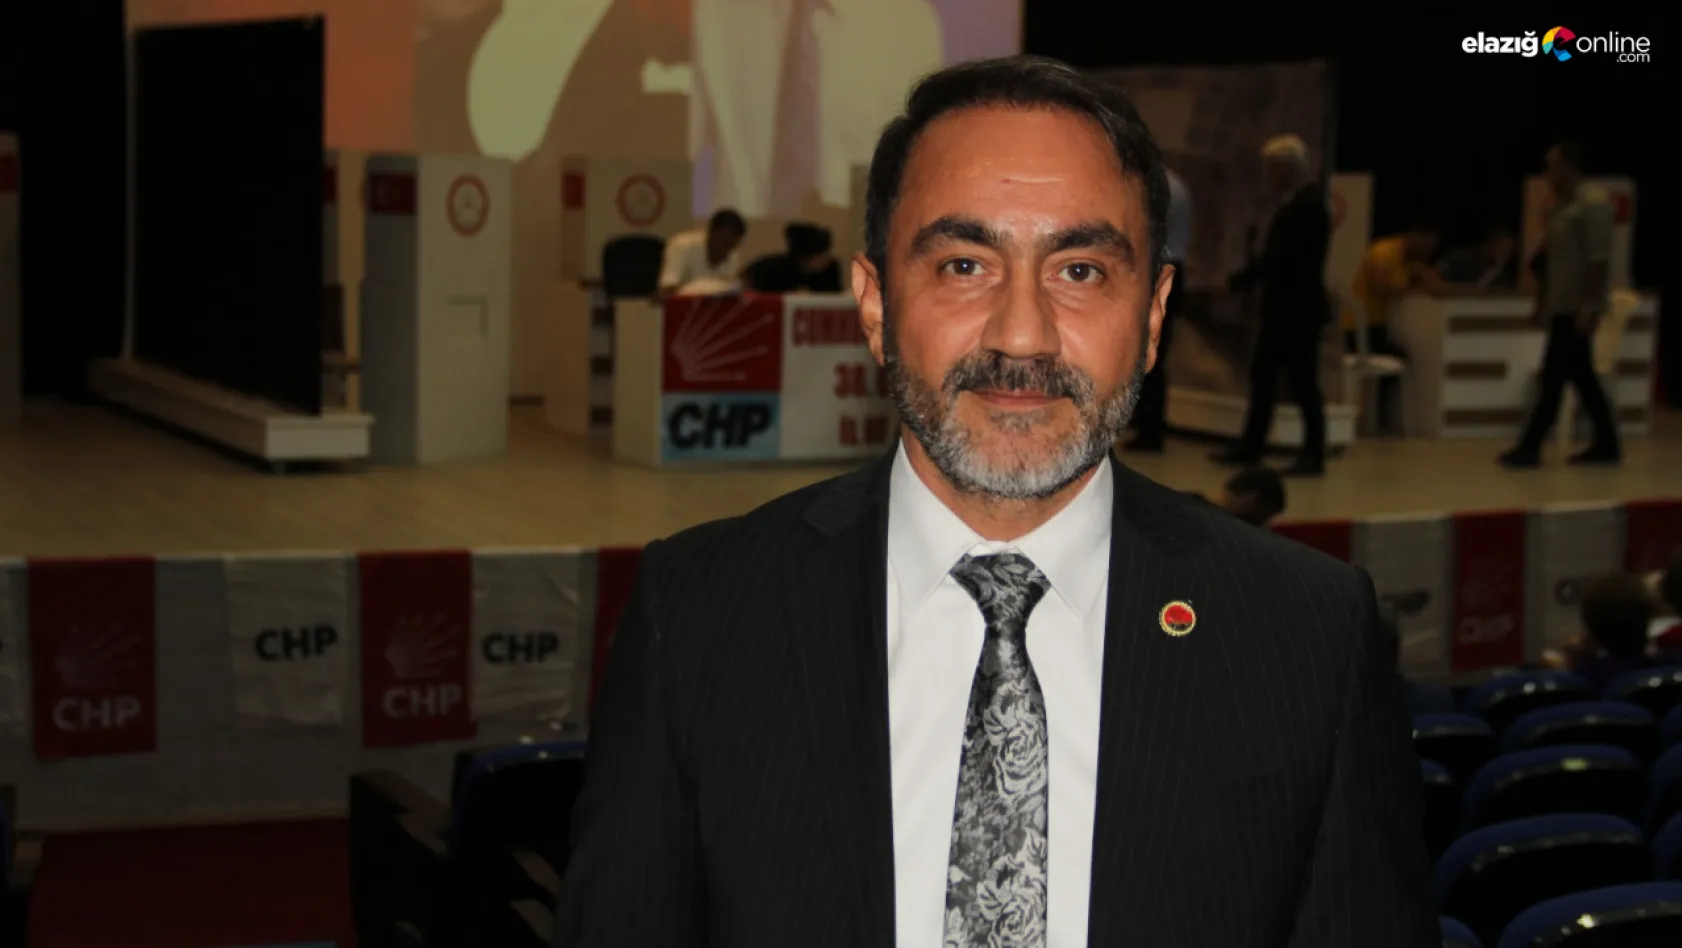 CHP Elazığ'da kongre maratonu tamamlandı! Başkan Duran güven tazeledi